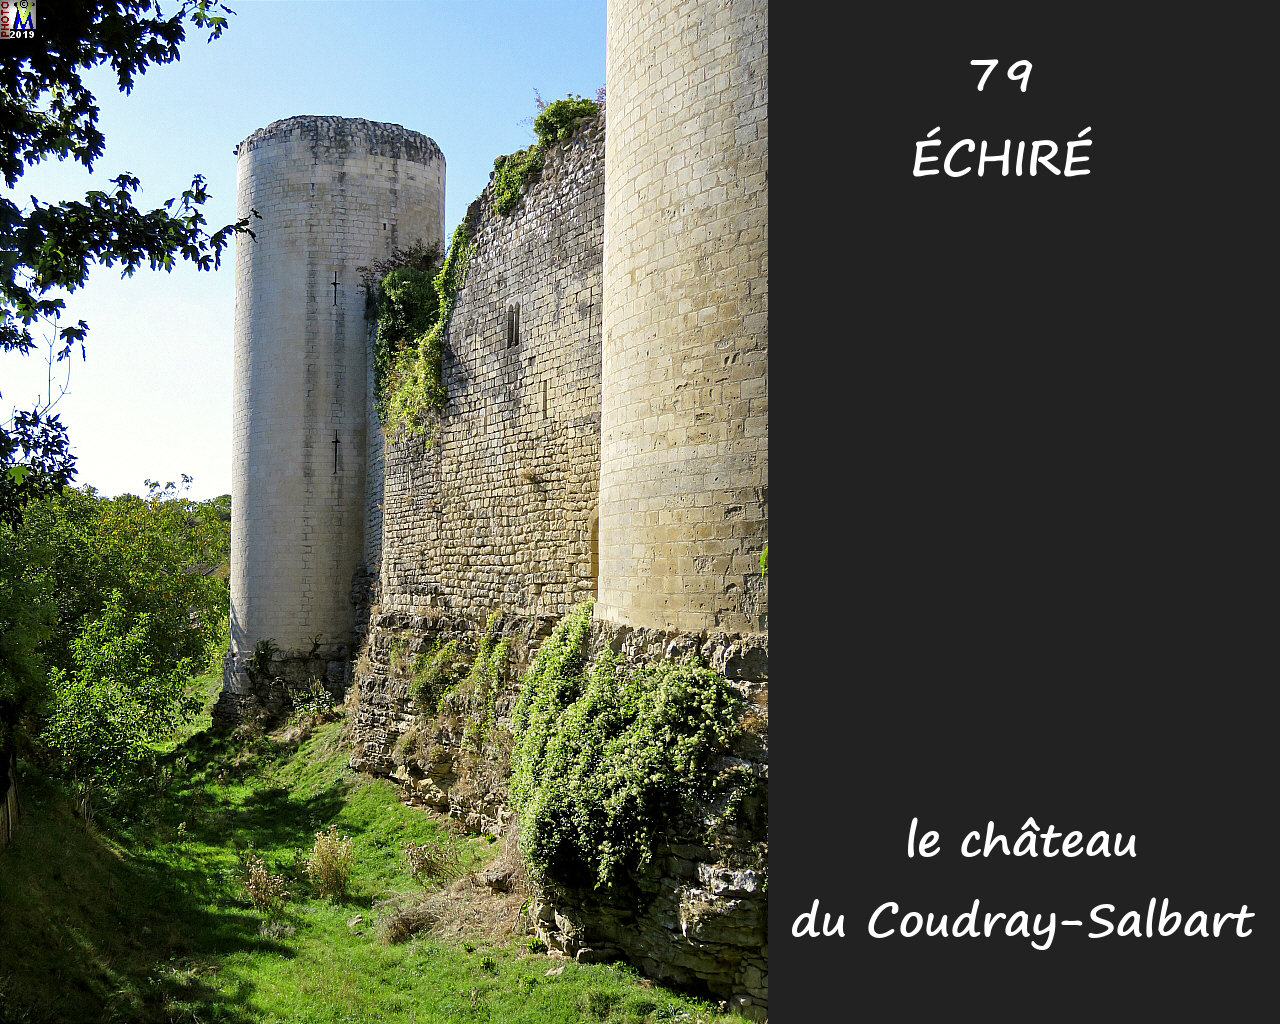 79ECHIRE_chateau_1050.jpg